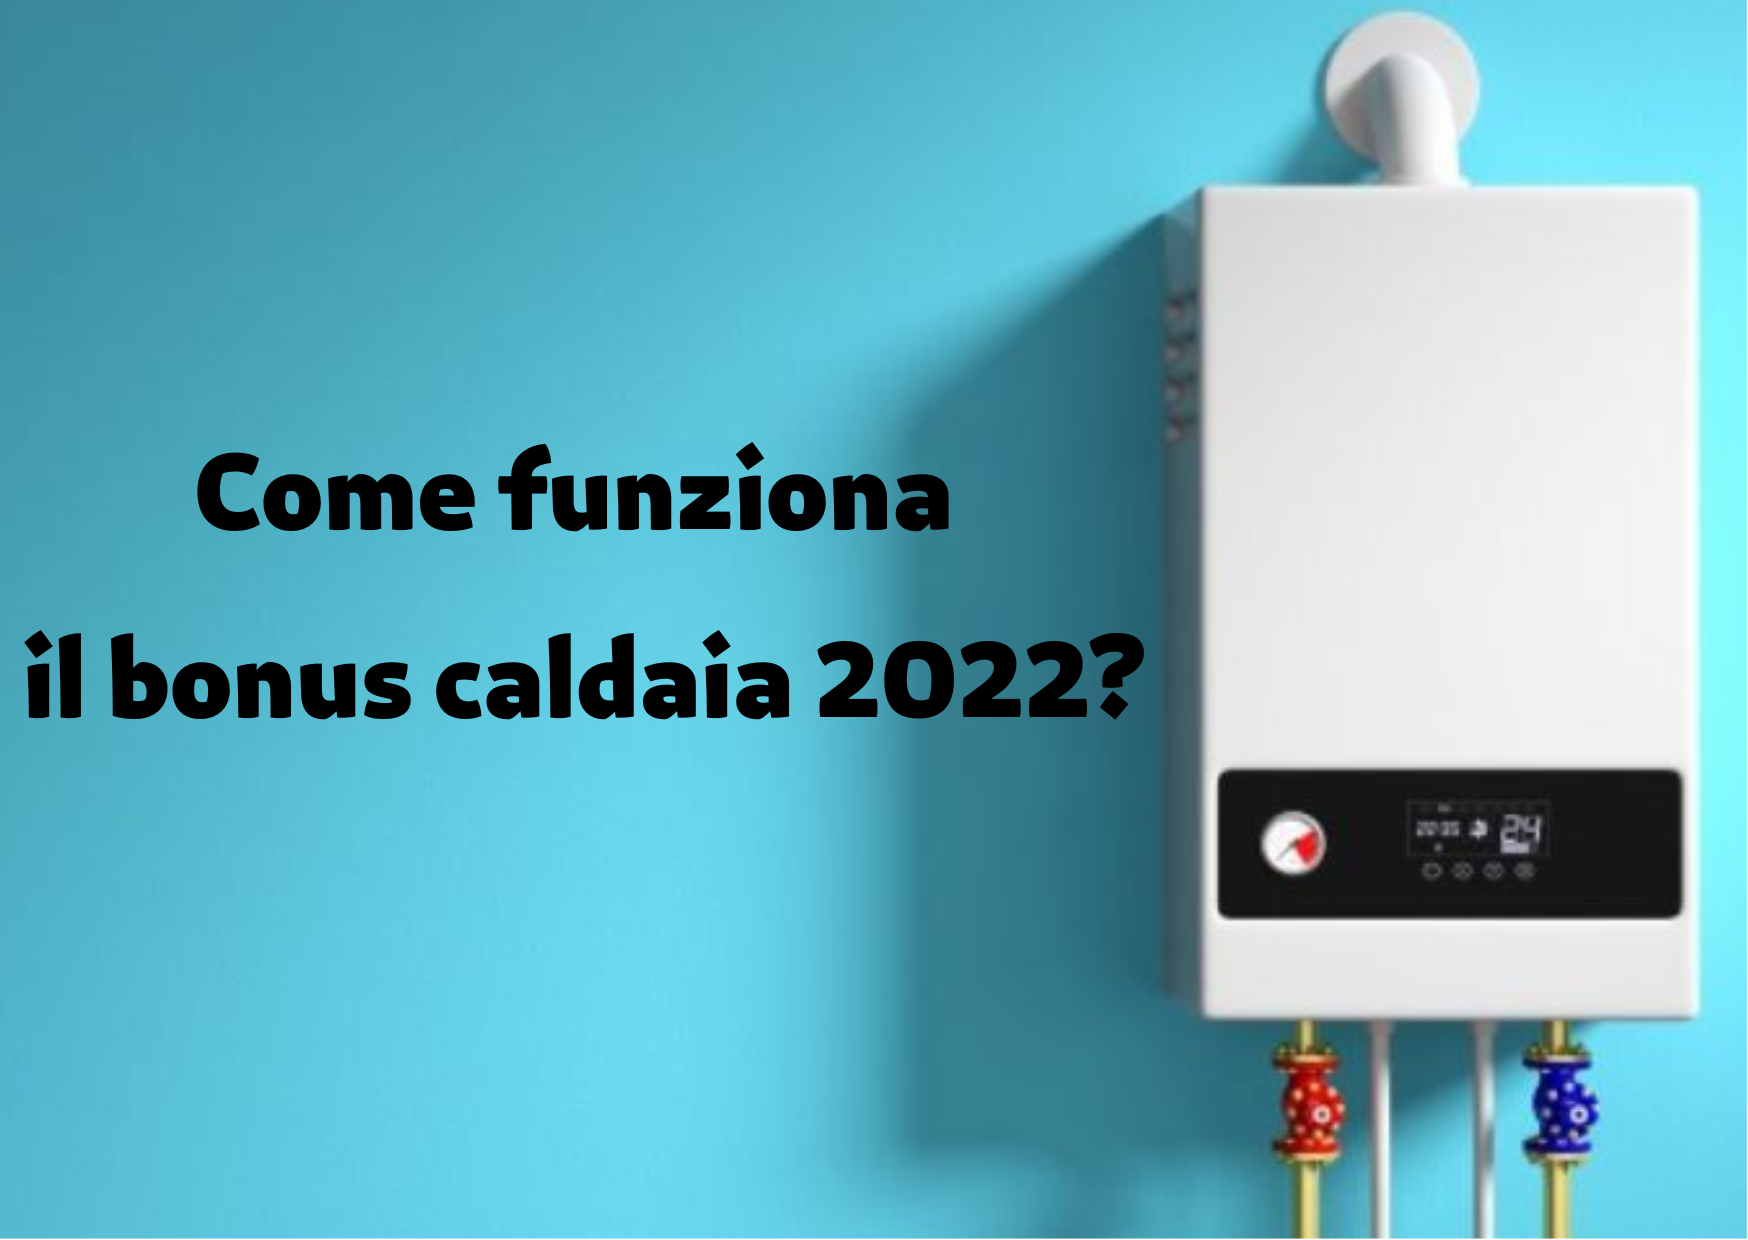 Come funziona il bonus caldaia 2022?